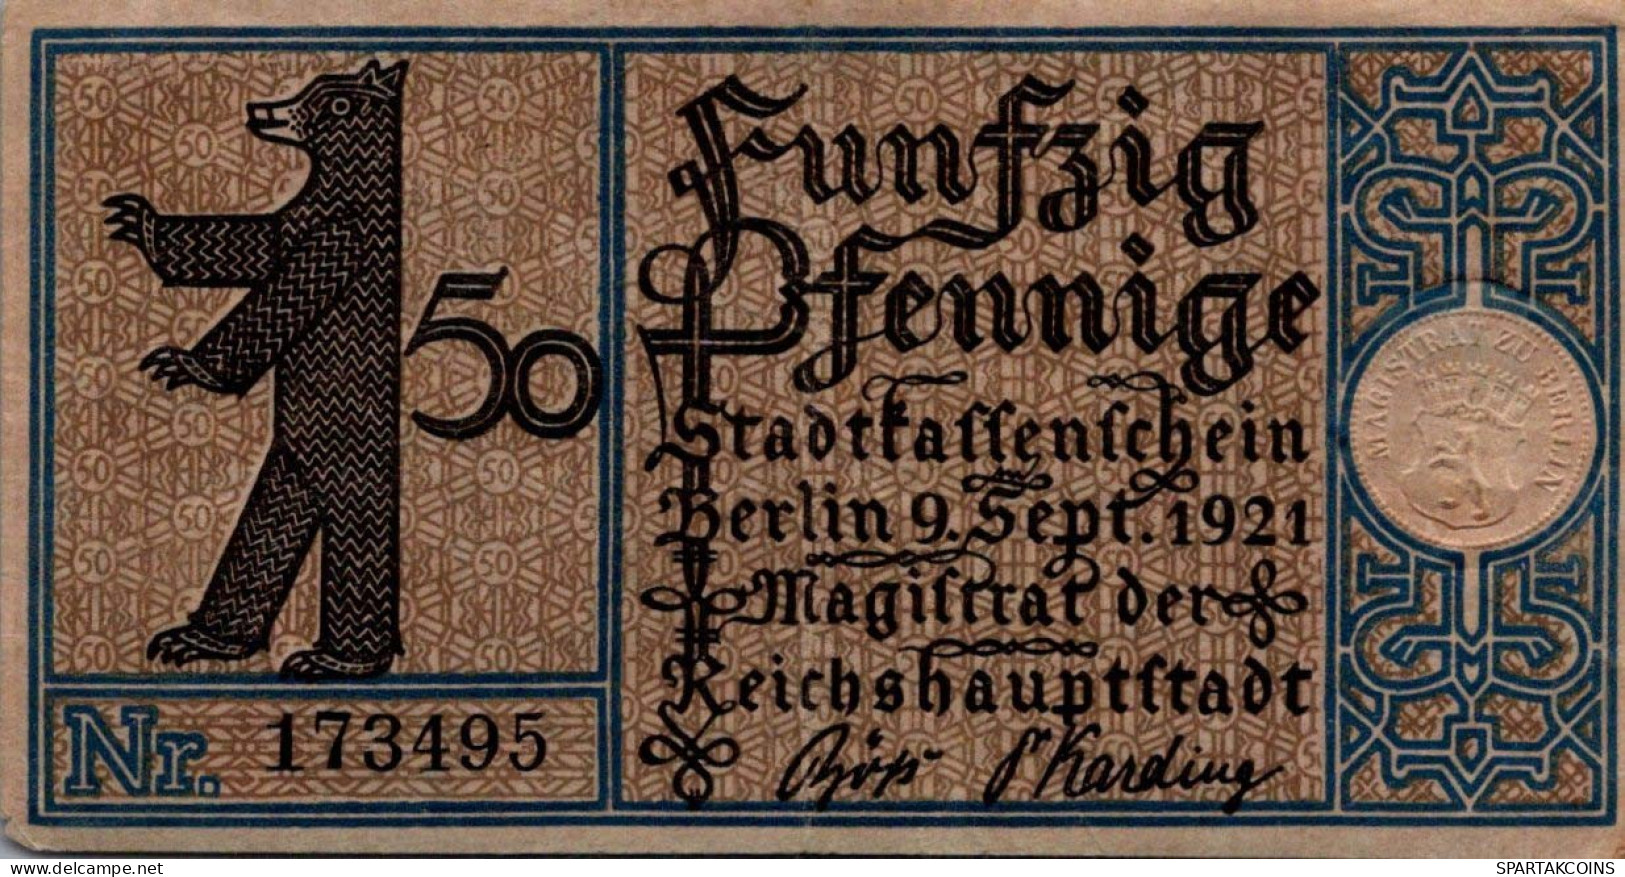 50 PFENNIG 1921 Stadt BERLIN UNC DEUTSCHLAND Notgeld Banknote #PH745 - [11] Local Banknote Issues